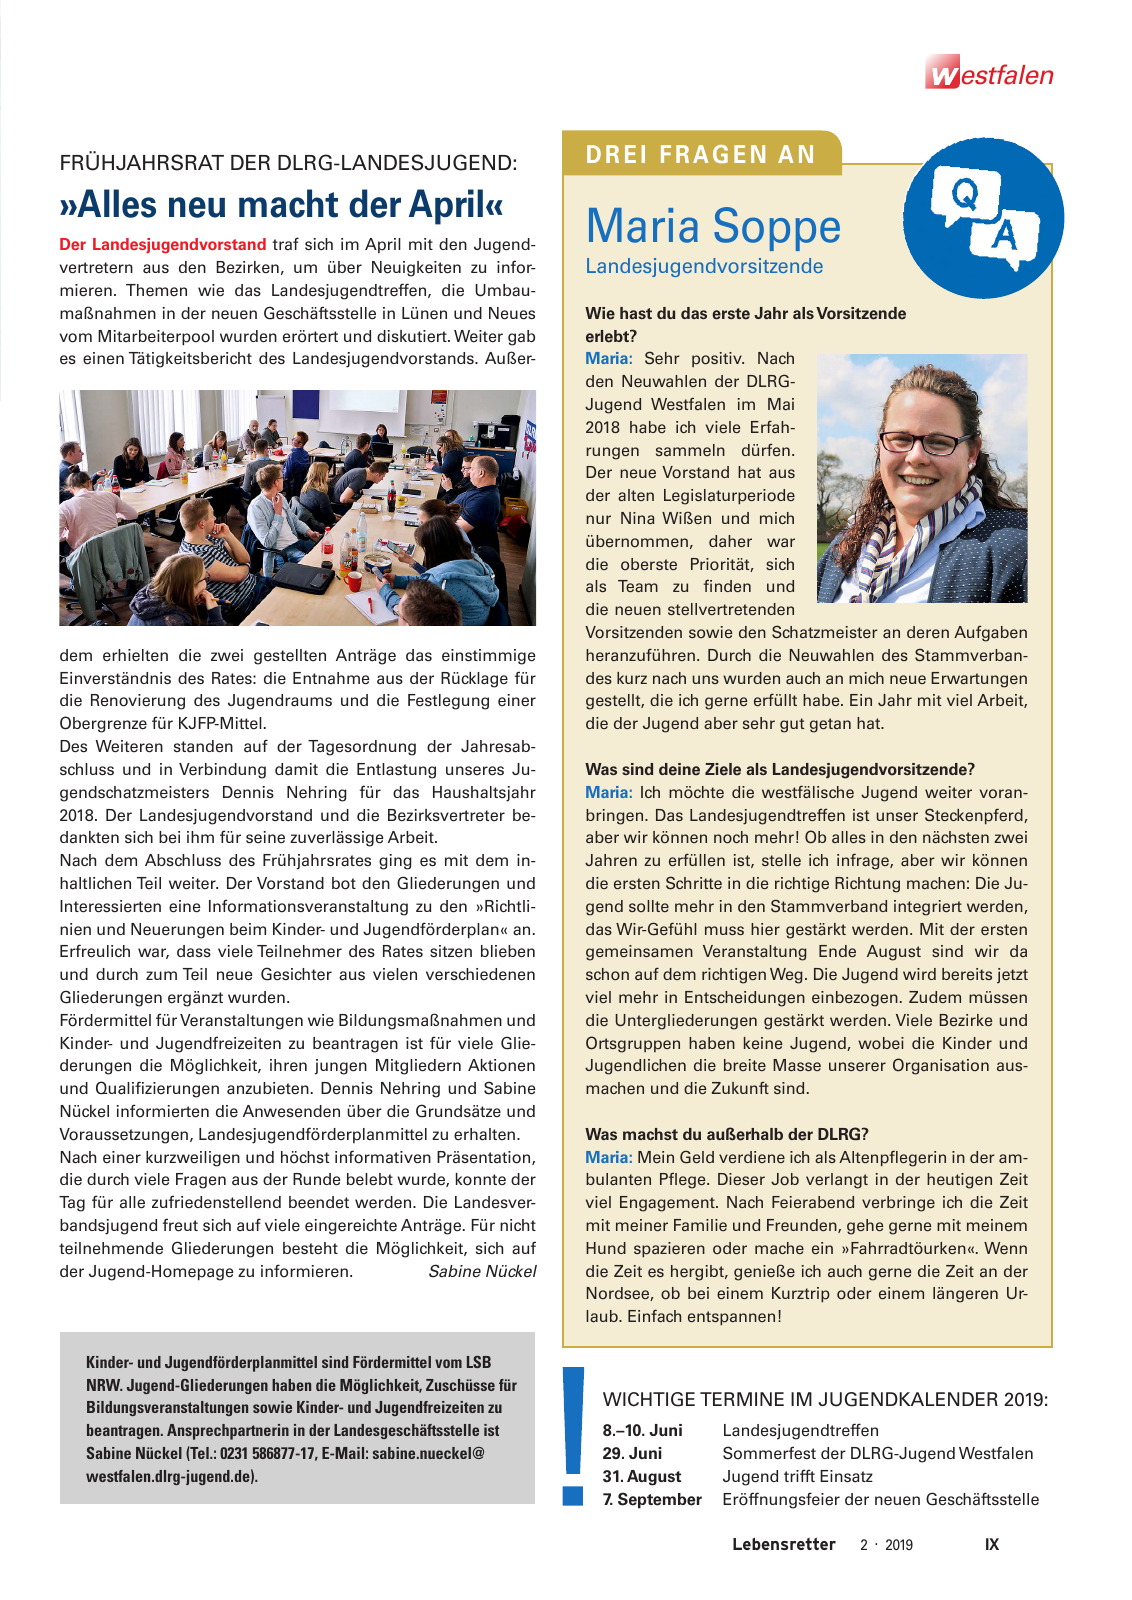 Vorschau Lebensretter 2/2019 - Westfalen Regionalausgabe Seite 11